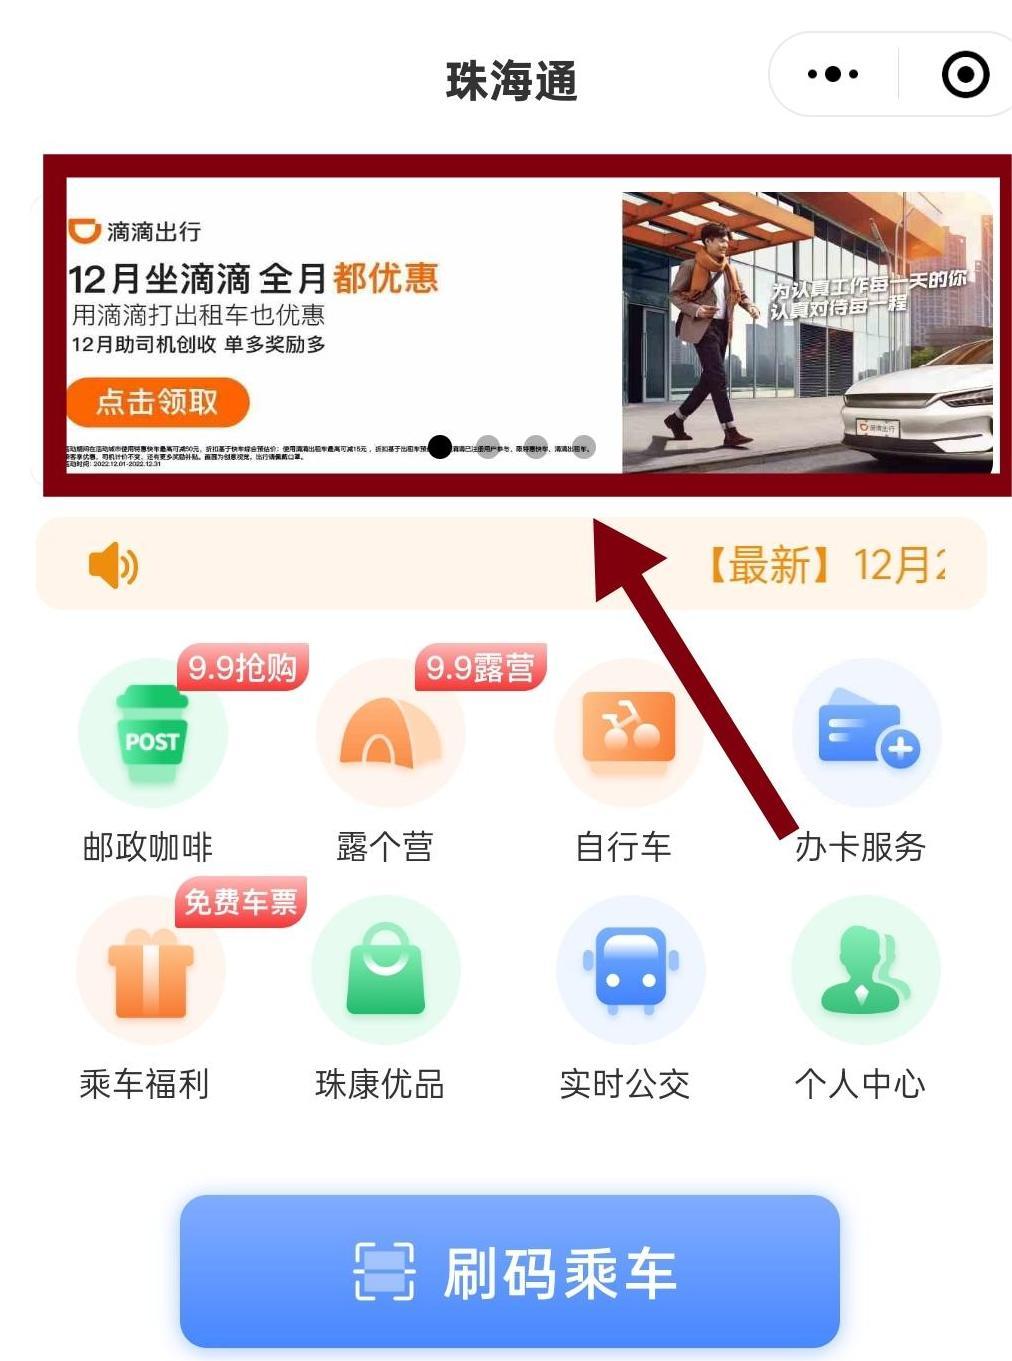 广东珠海珠海通乘车码小程序、珠海TONG公众号微信广告CPD